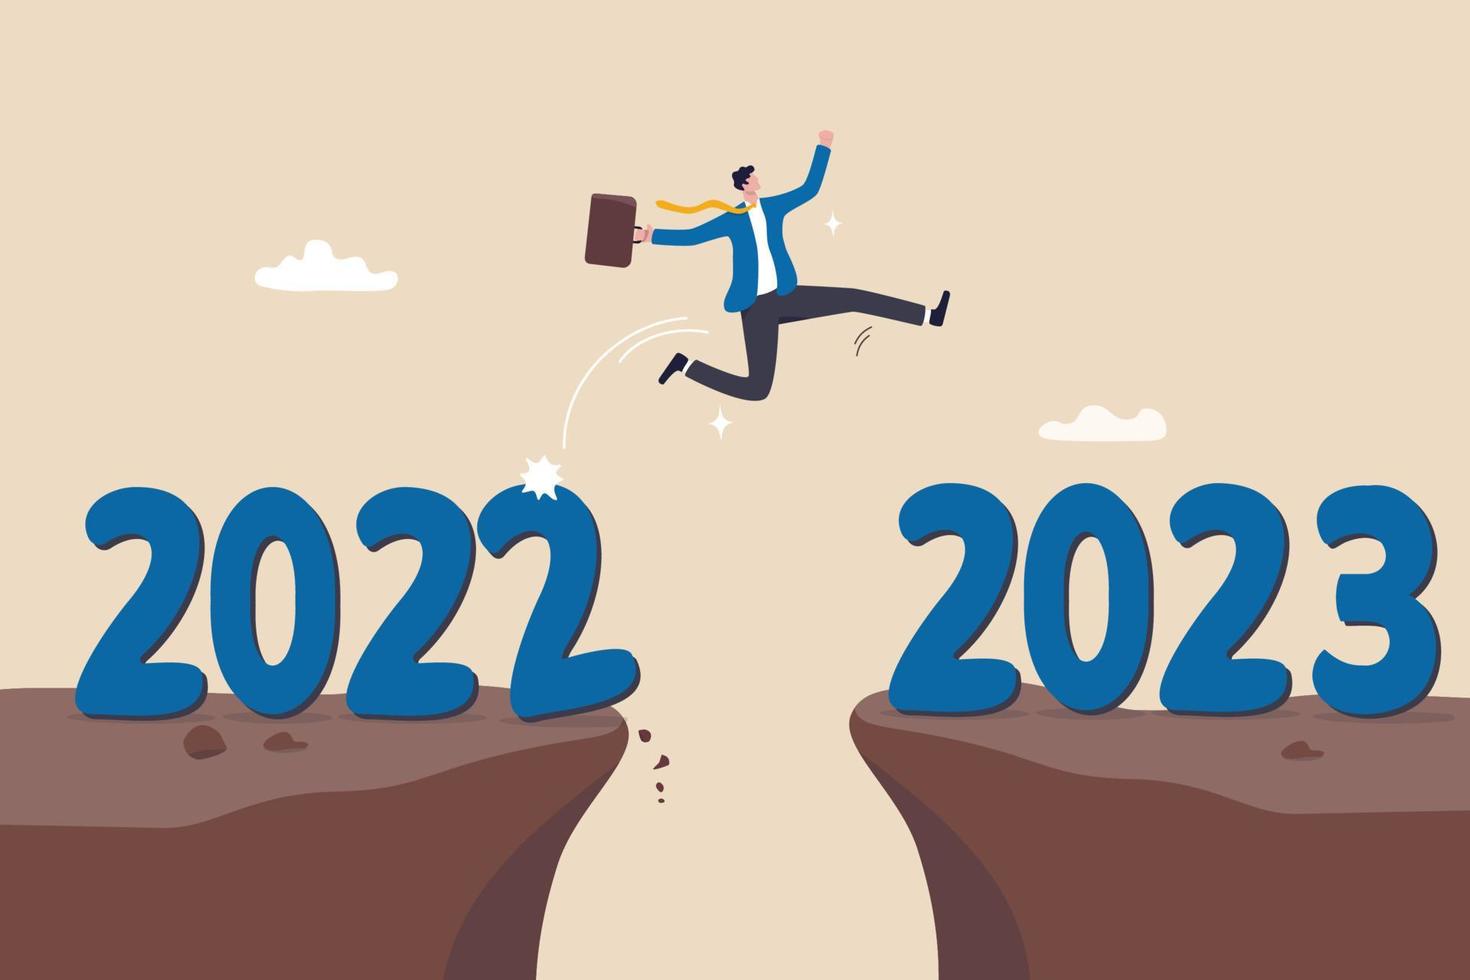 feliz año nuevo 2023 esperanza de éxito empresarial, resolución u oportunidad de año nuevo, concepto de motivación y disfrute del trabajo, hombre de negocios feliz salta cruzando la brecha del año 2022 al 2023. vector